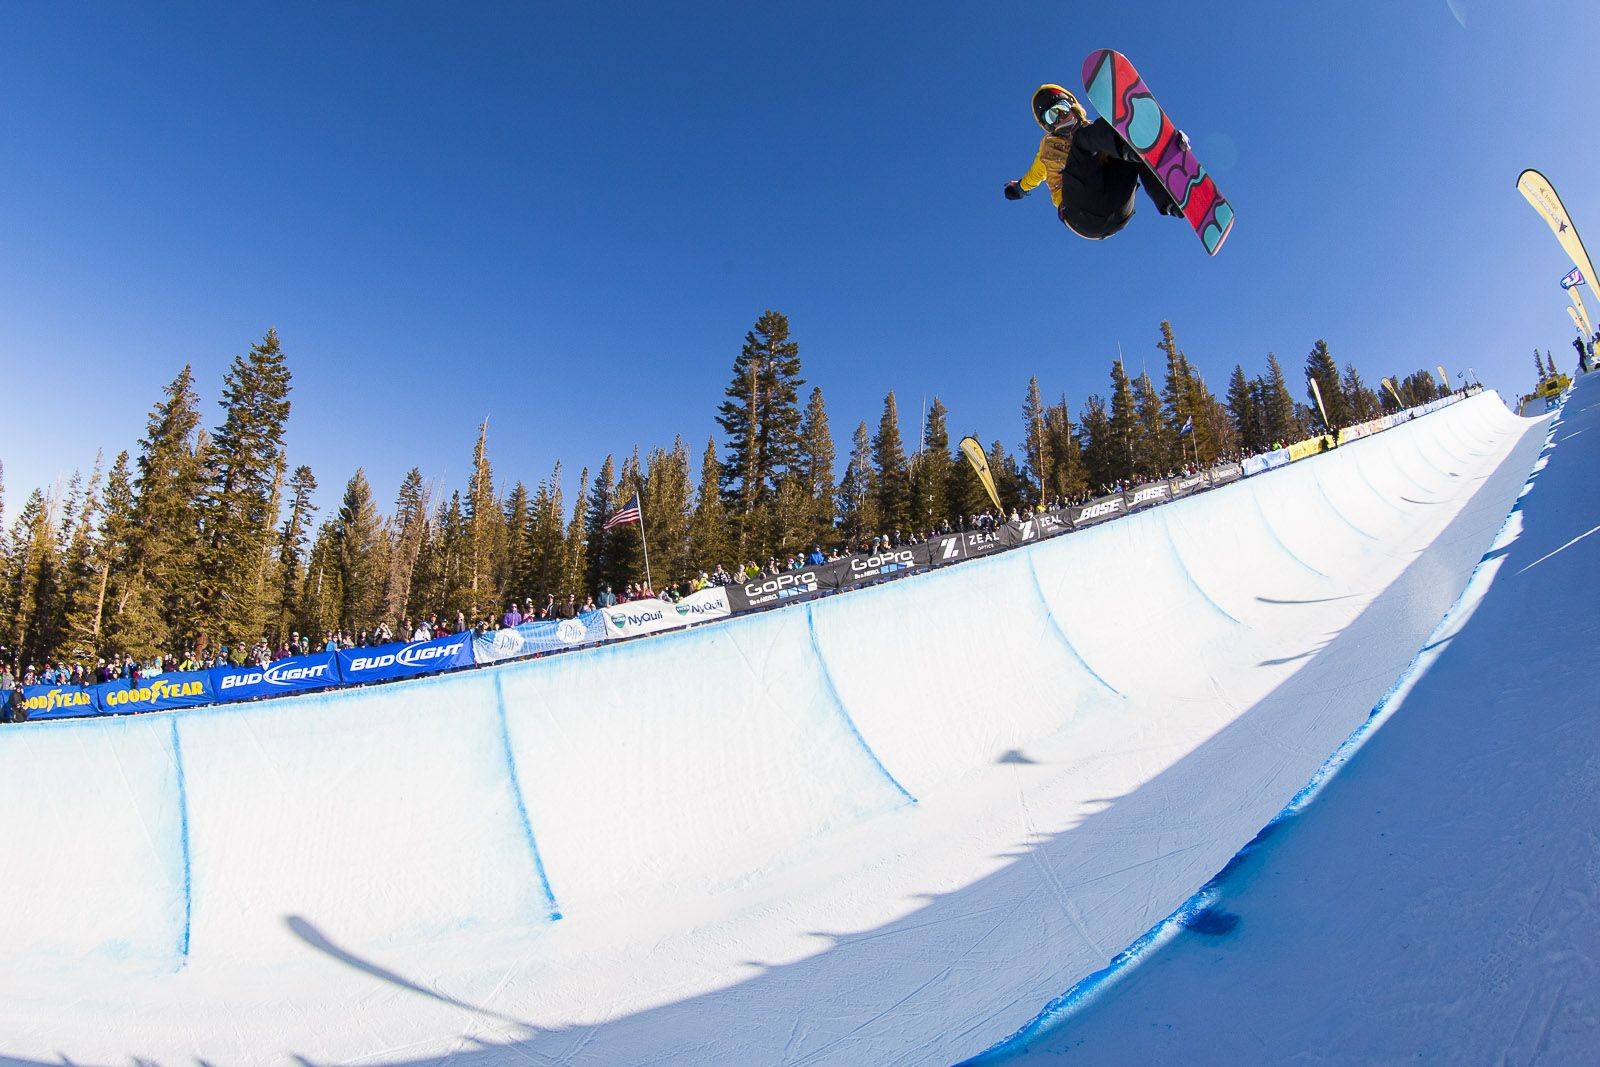 Shaun White – Todo mundo que gosta de snowboard deveria conhecer esse atleta